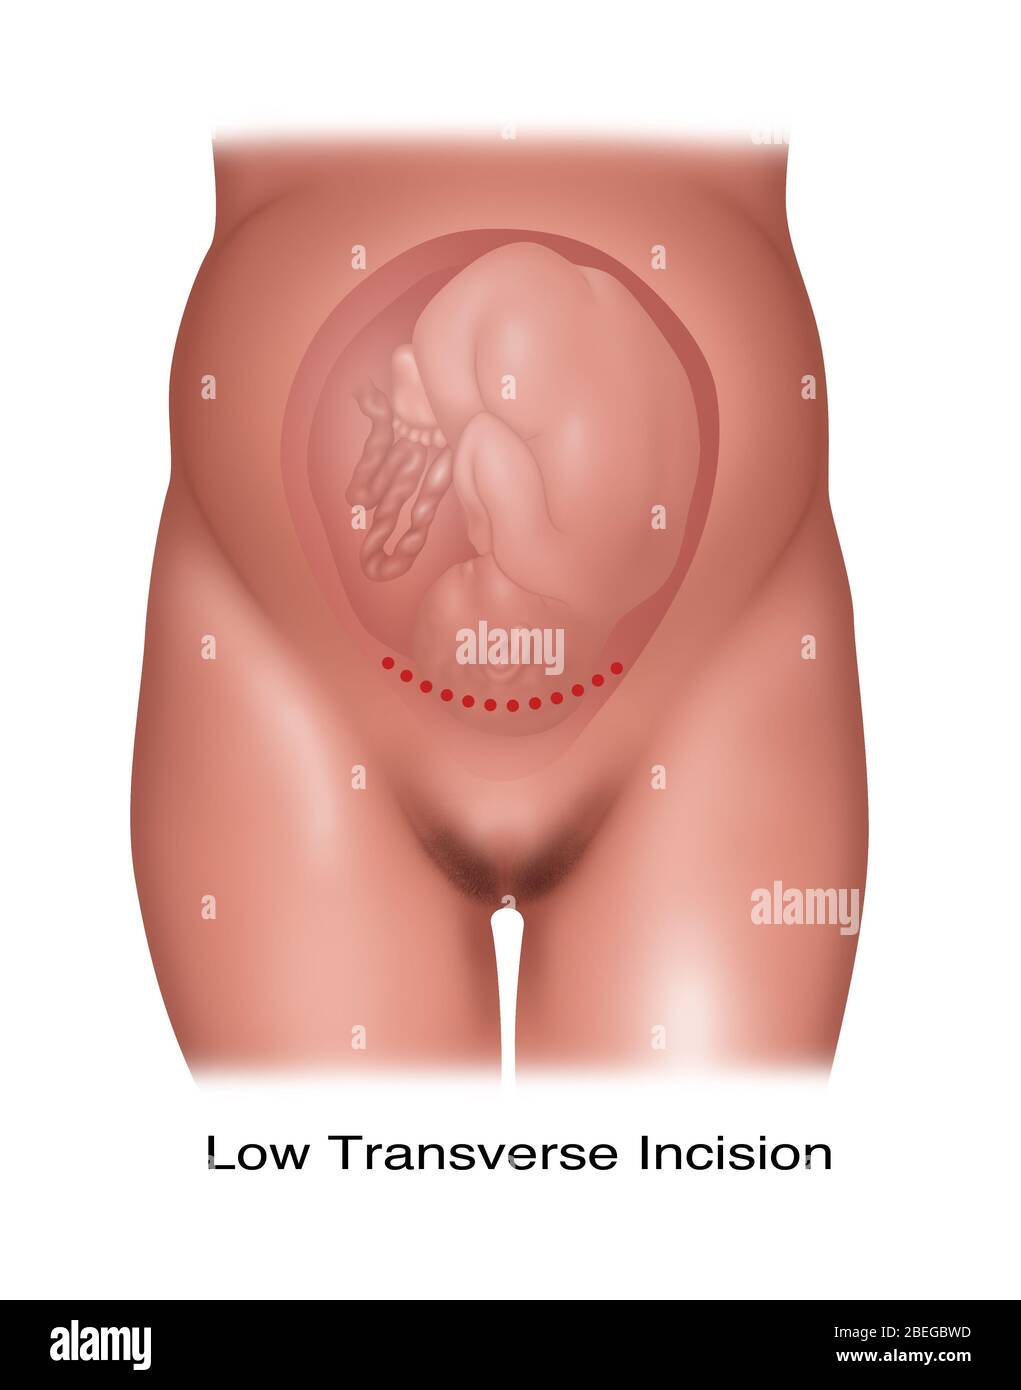 Illustrazione di una bassa incisione cesarea trasversale utilizzata per somministrare un feto posizionato normalmente. Foto Stock